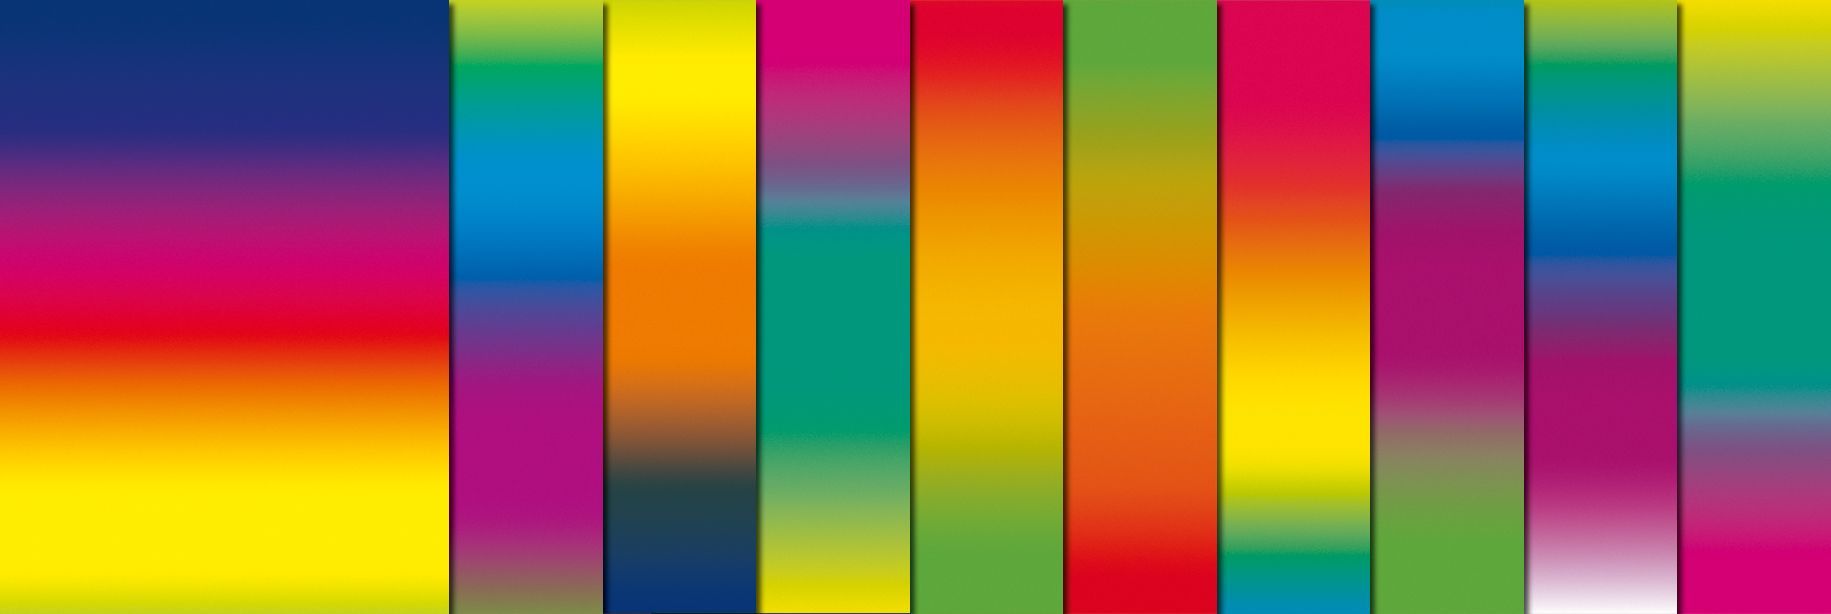 Regenbogen-Tonzeichenpapier, 10 Bögen